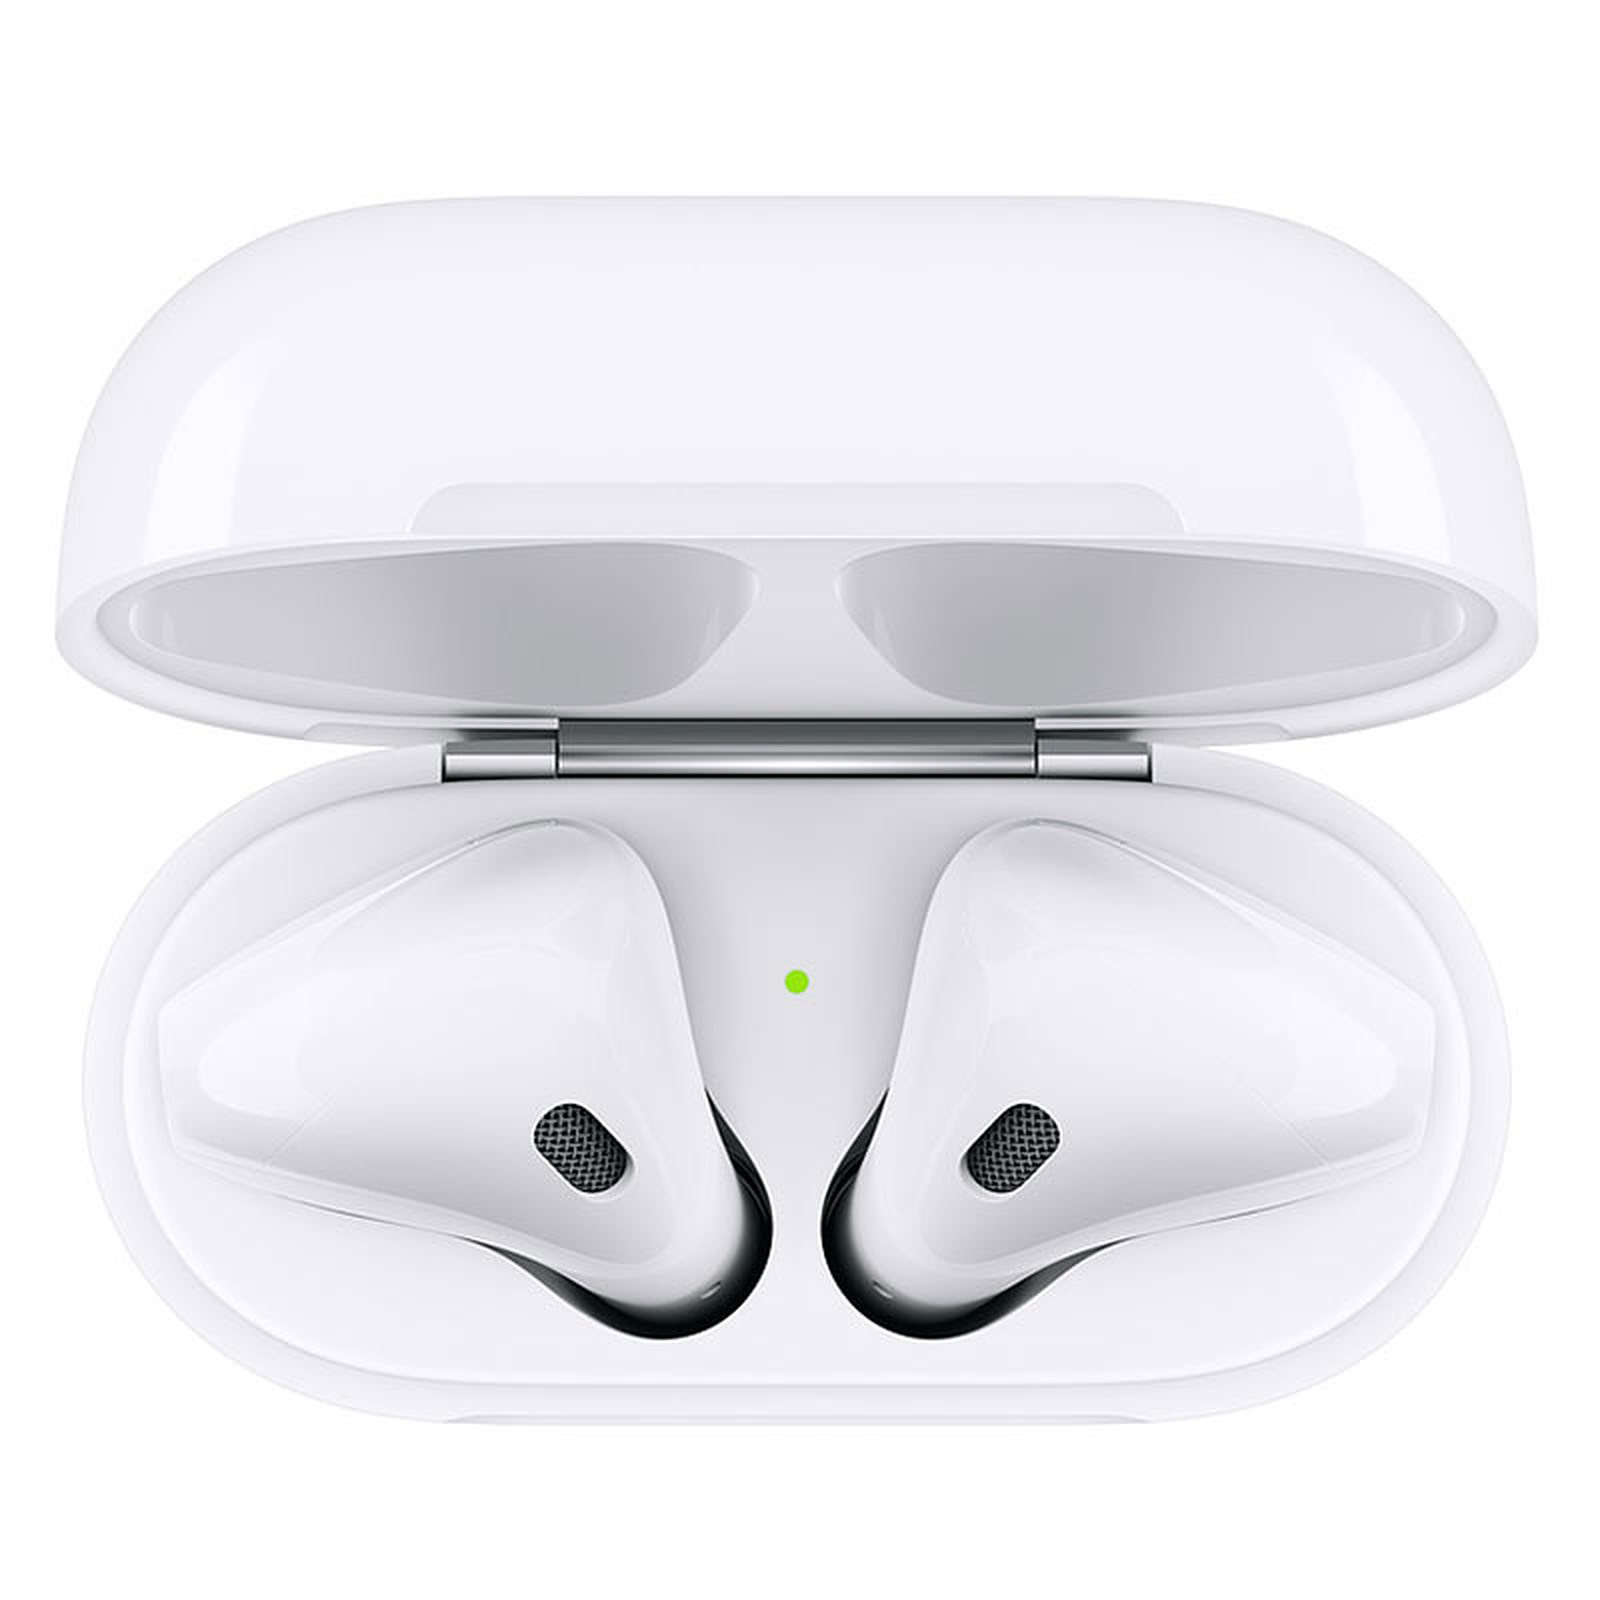 Ecouteur Airpods 2 - MV7N2ZM/A - Accessoire téléphonie Apple - 1